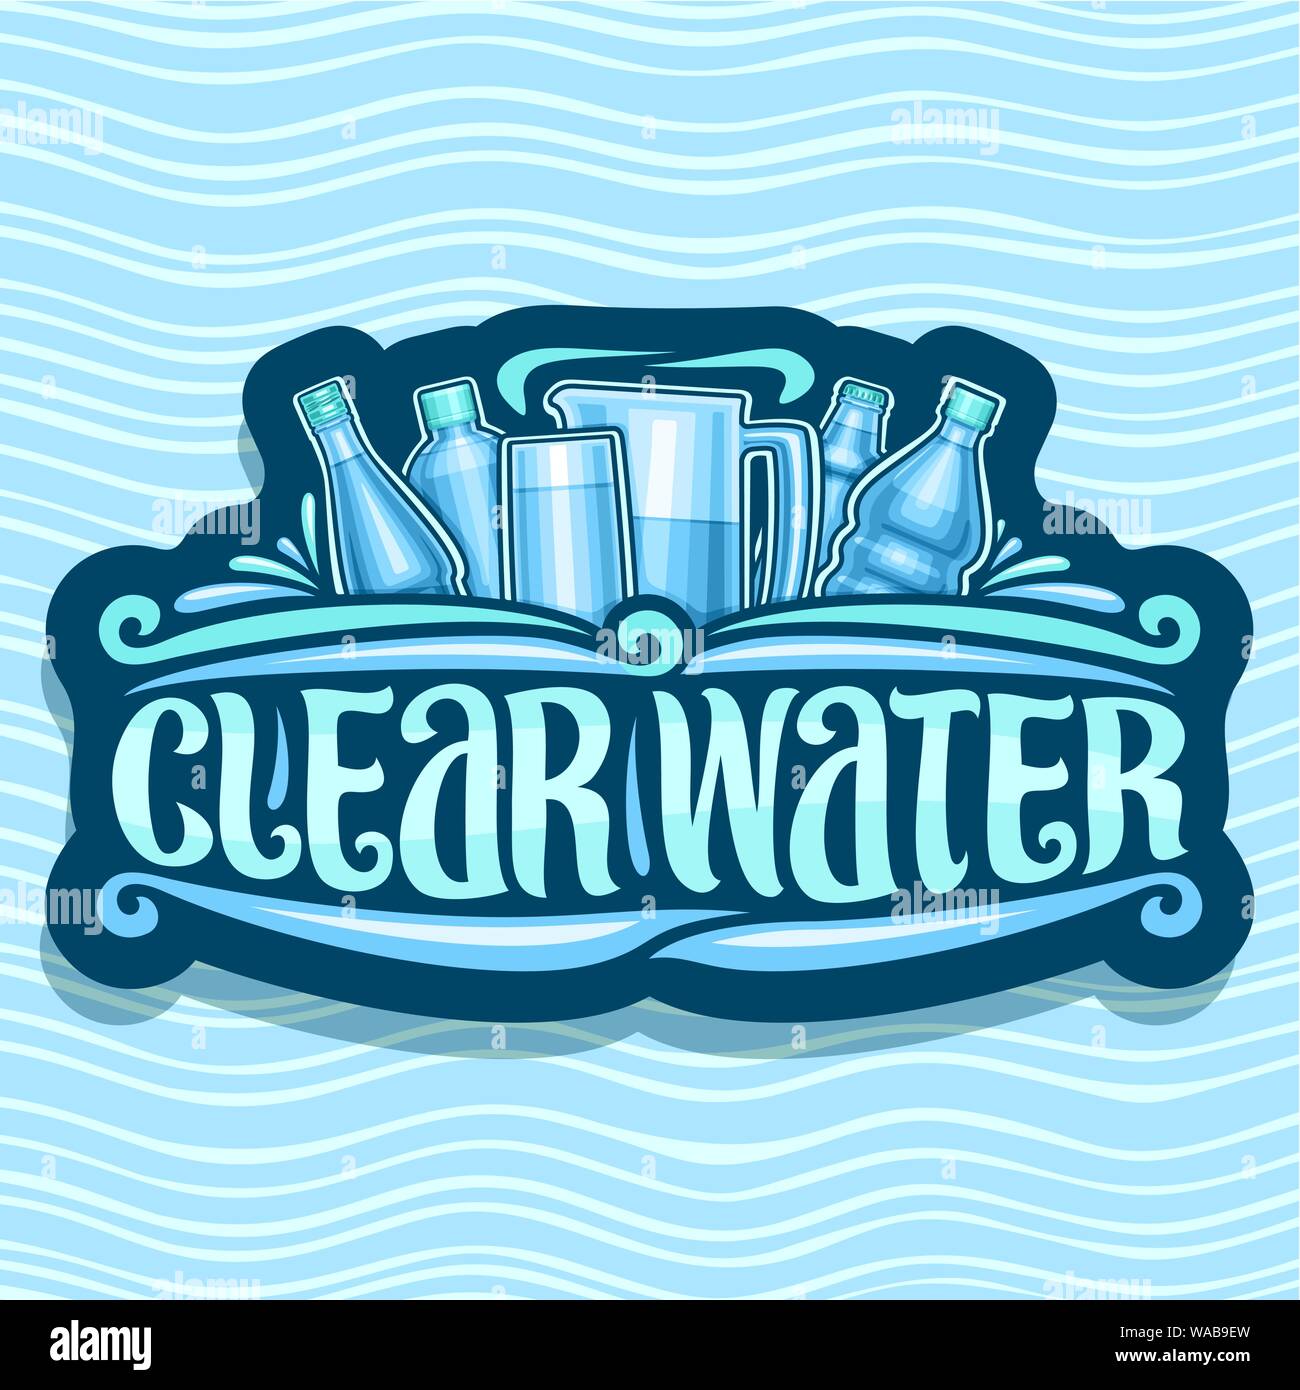 Il logo di vettore per le acque chiare, scuro retro adesivo con diverse bottiglie di plastica e la caraffa con vetro, spazzola originale di scritte per parole acqua chiara, signb Illustrazione Vettoriale